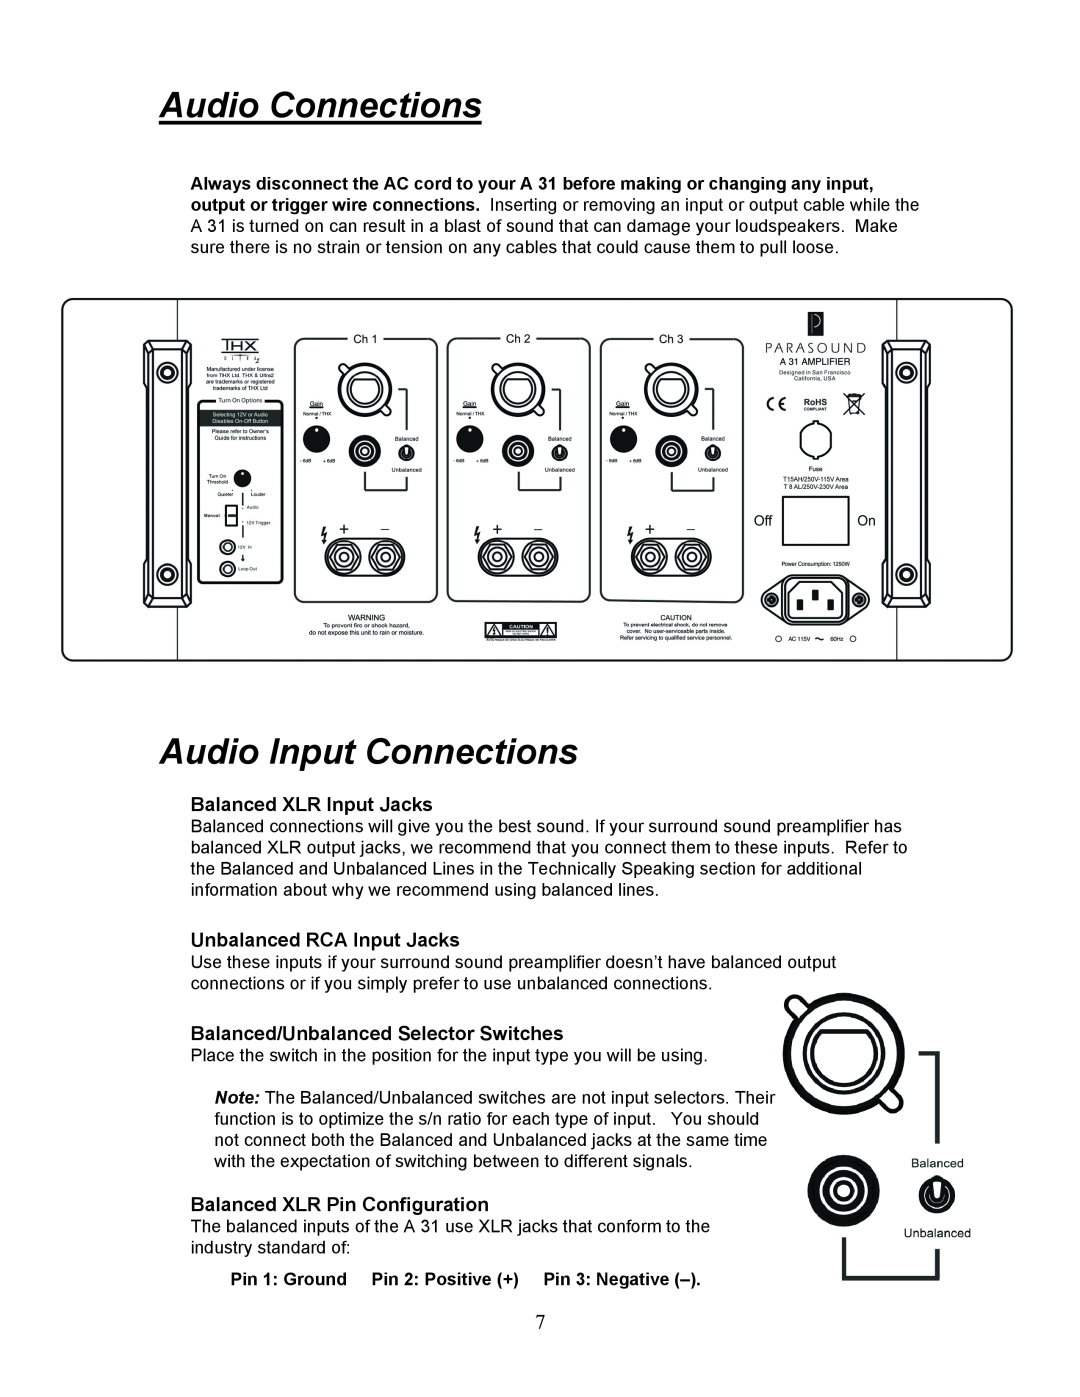 Parasound A 31 manual Audio Connections, Audio Input Connections, Balanced XLR Input Jacks, Unbalanced RCA Input Jacks 